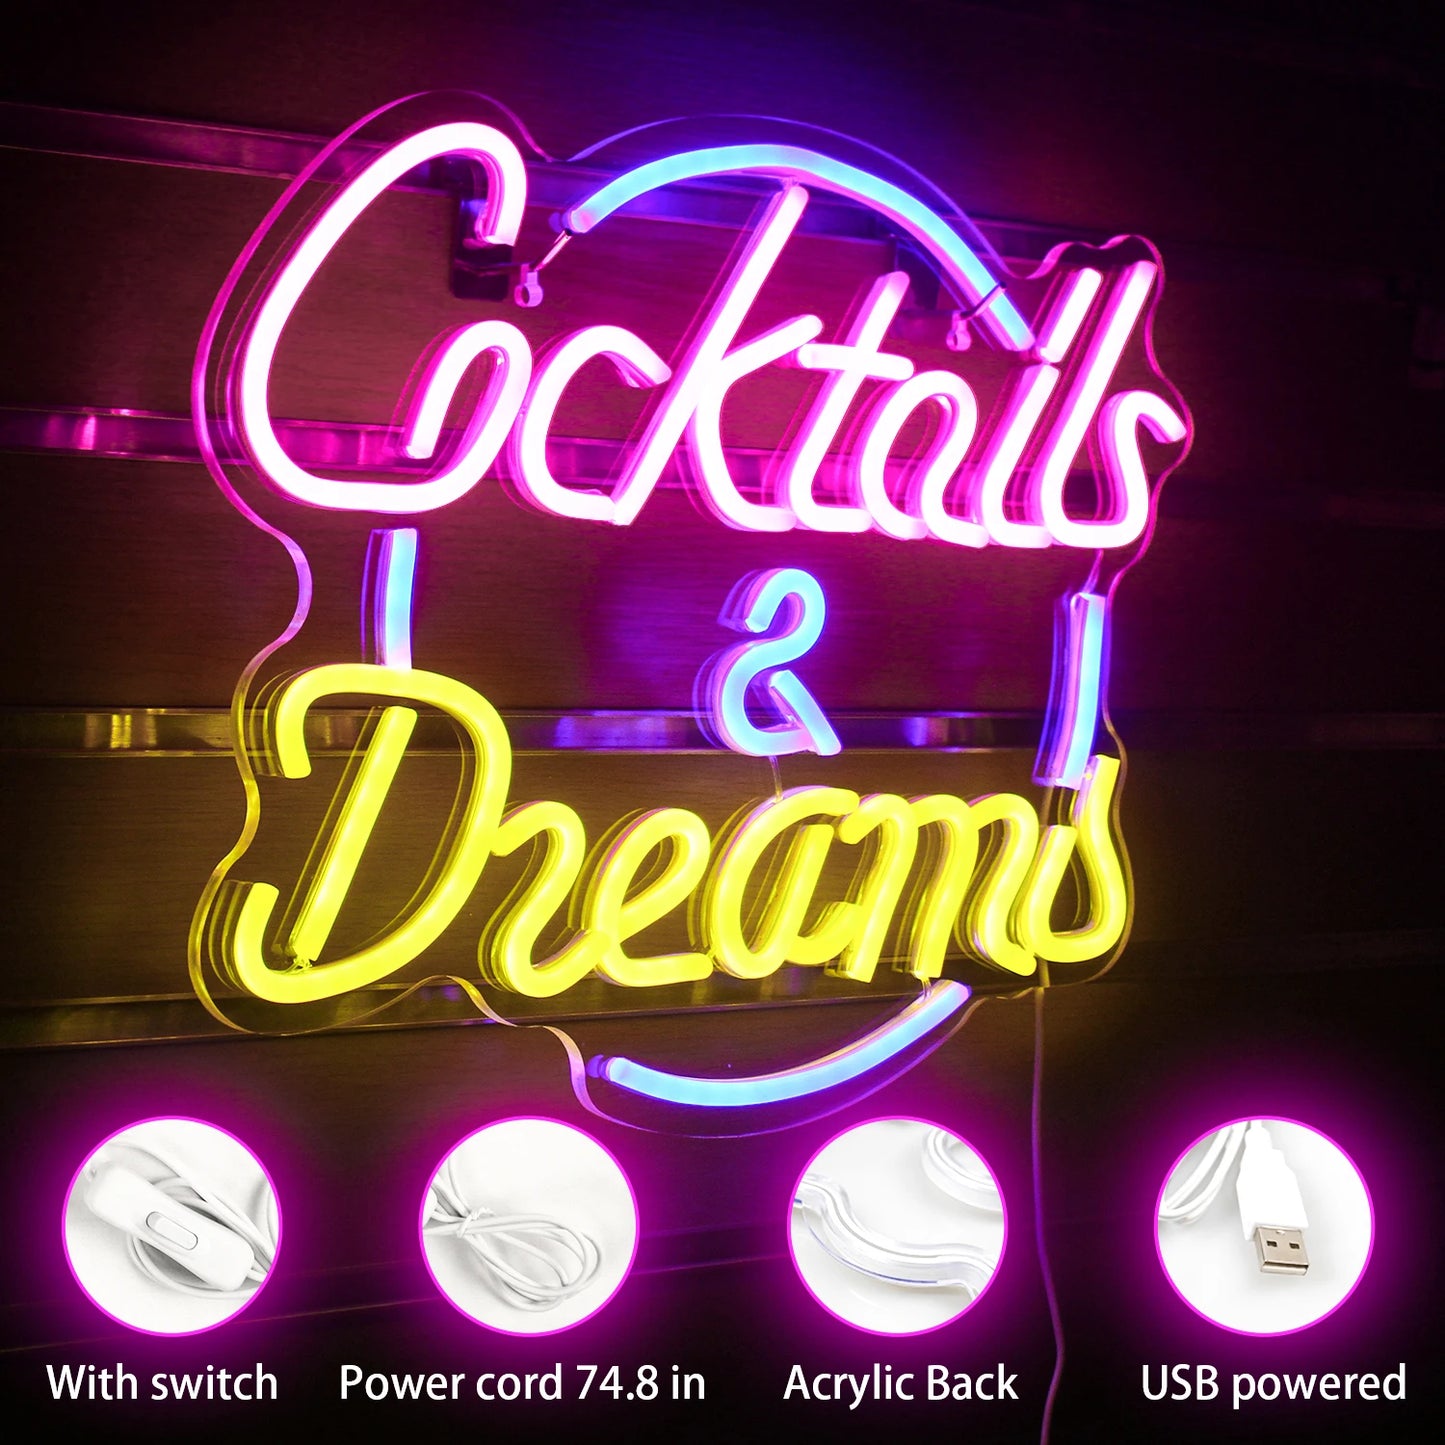 Neonschild Cocktais $ Dreams  beleuchtete Werbung Wanddekoration Bier Bar Shop Pub Club Nachtclub Geburtstagsfeier dekoratives Neon Nachtlicht